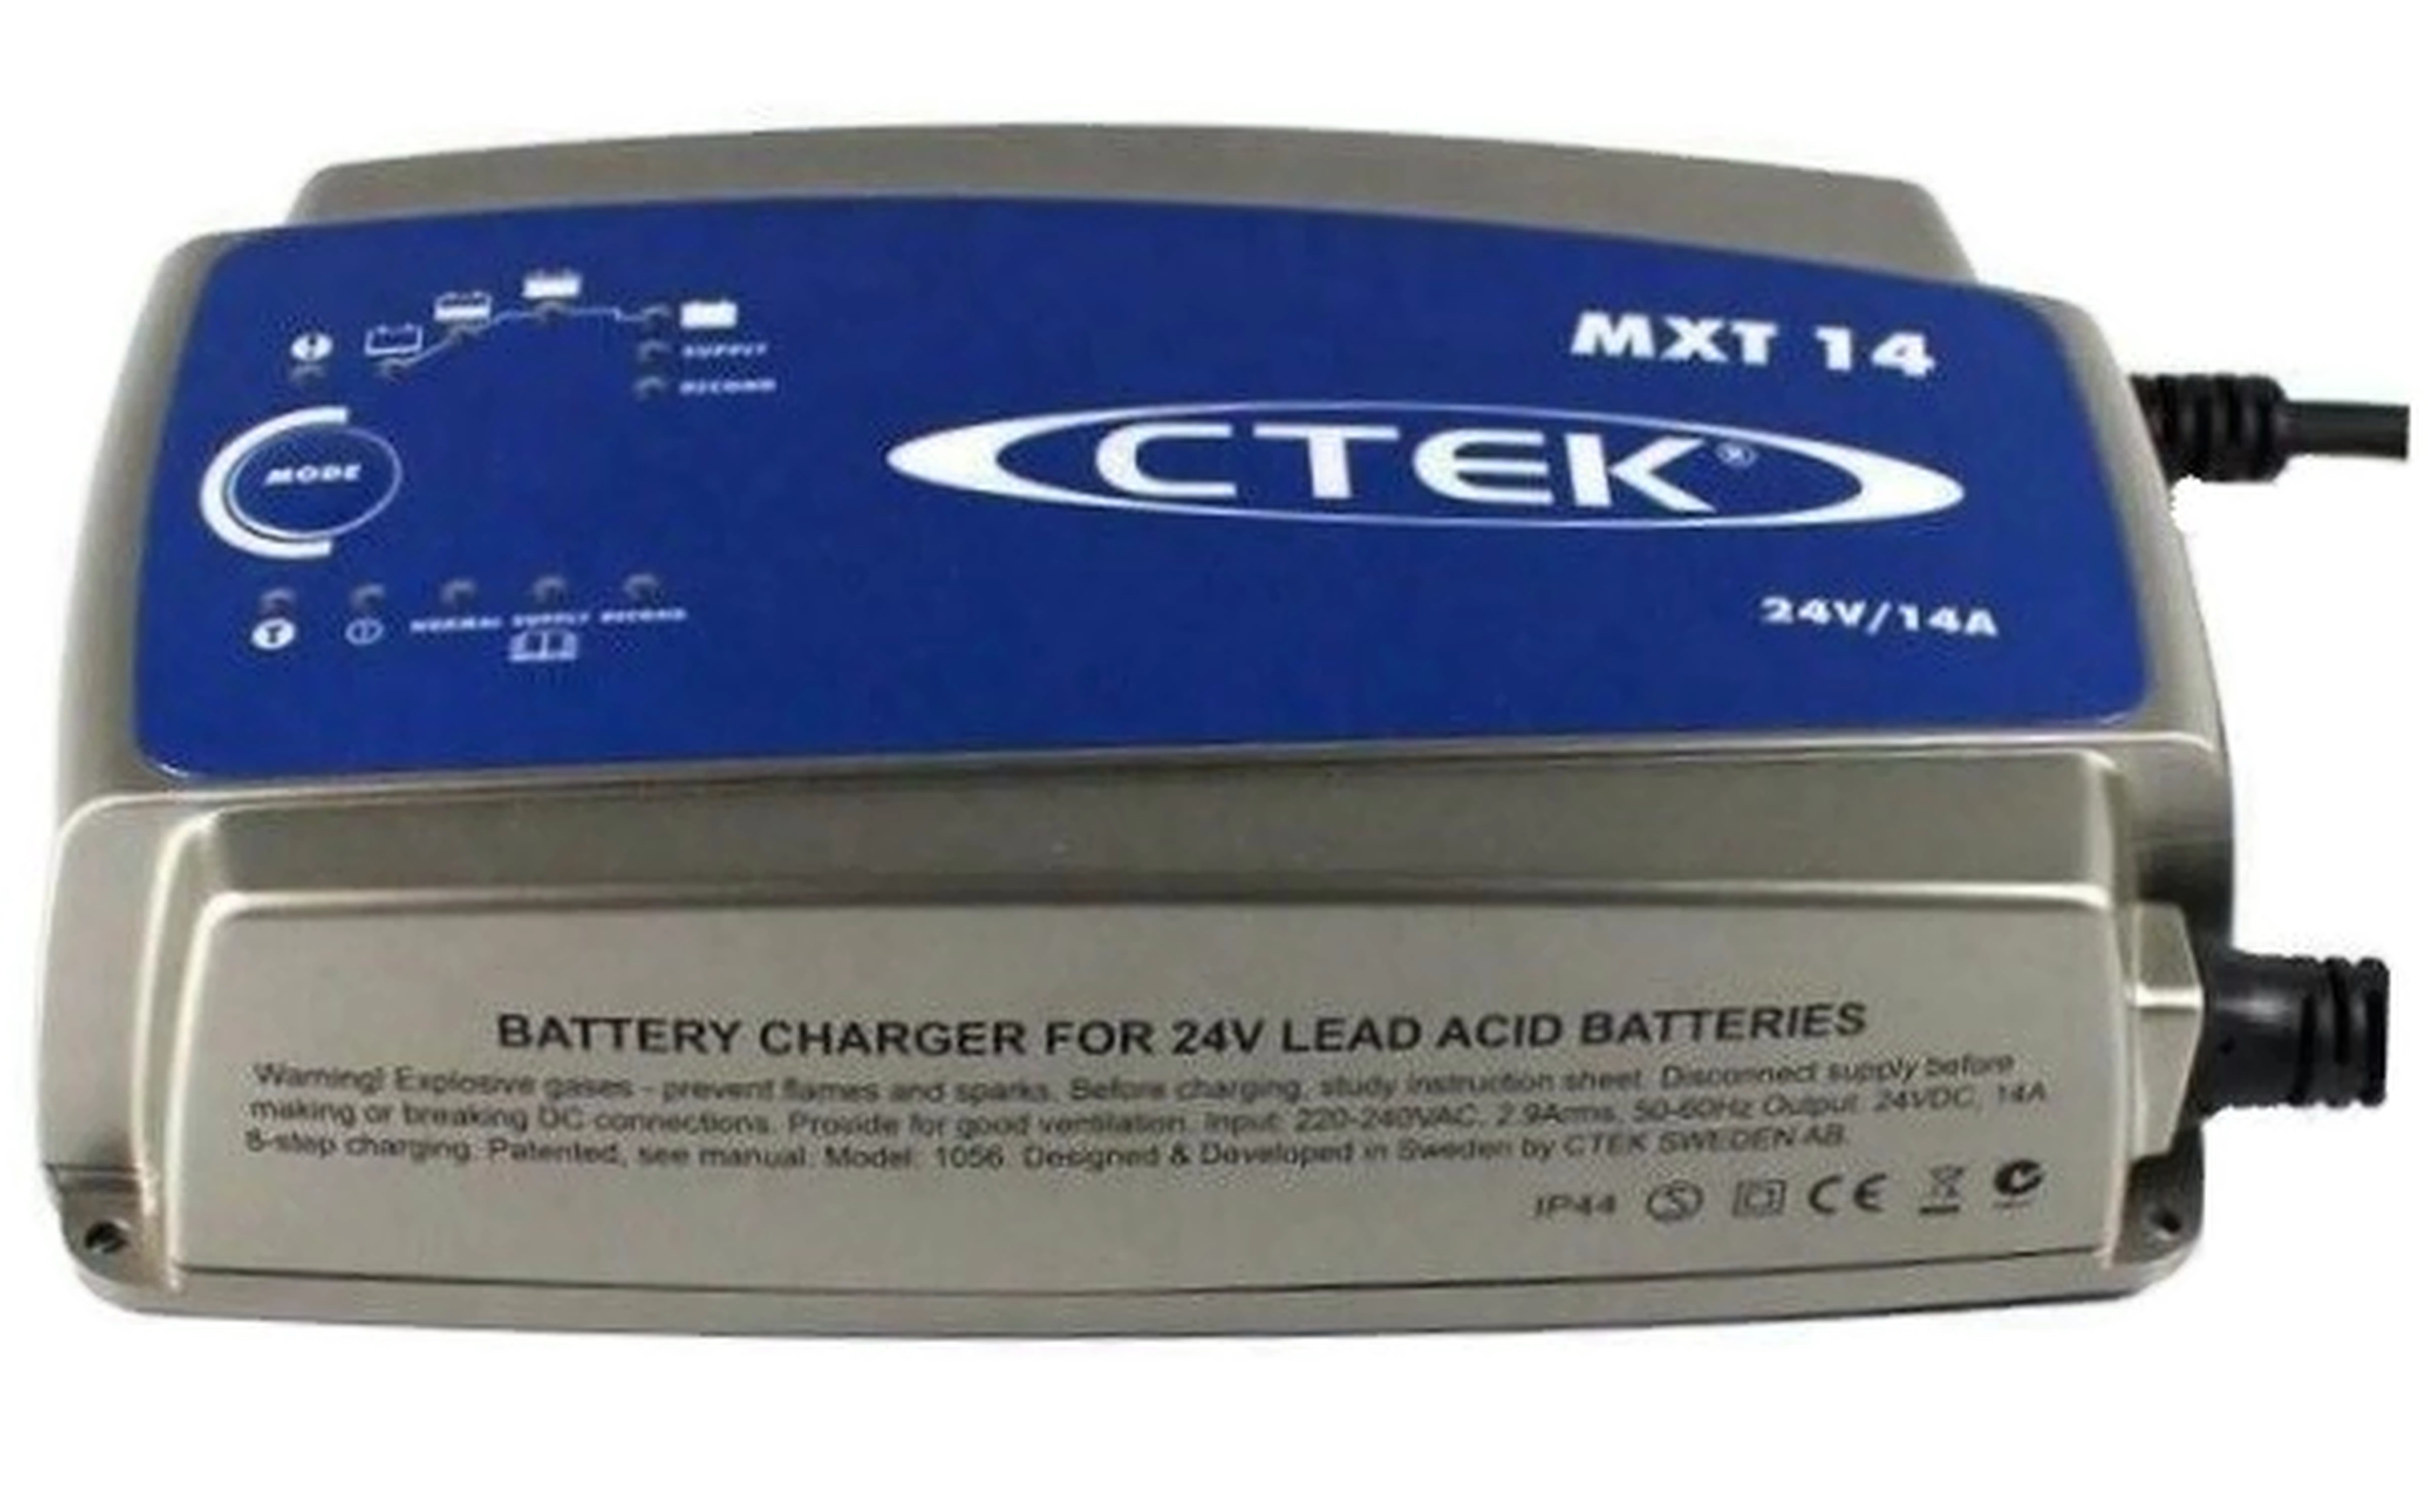 CTEK Batterie Ladegerät  MXT14 24V 14A